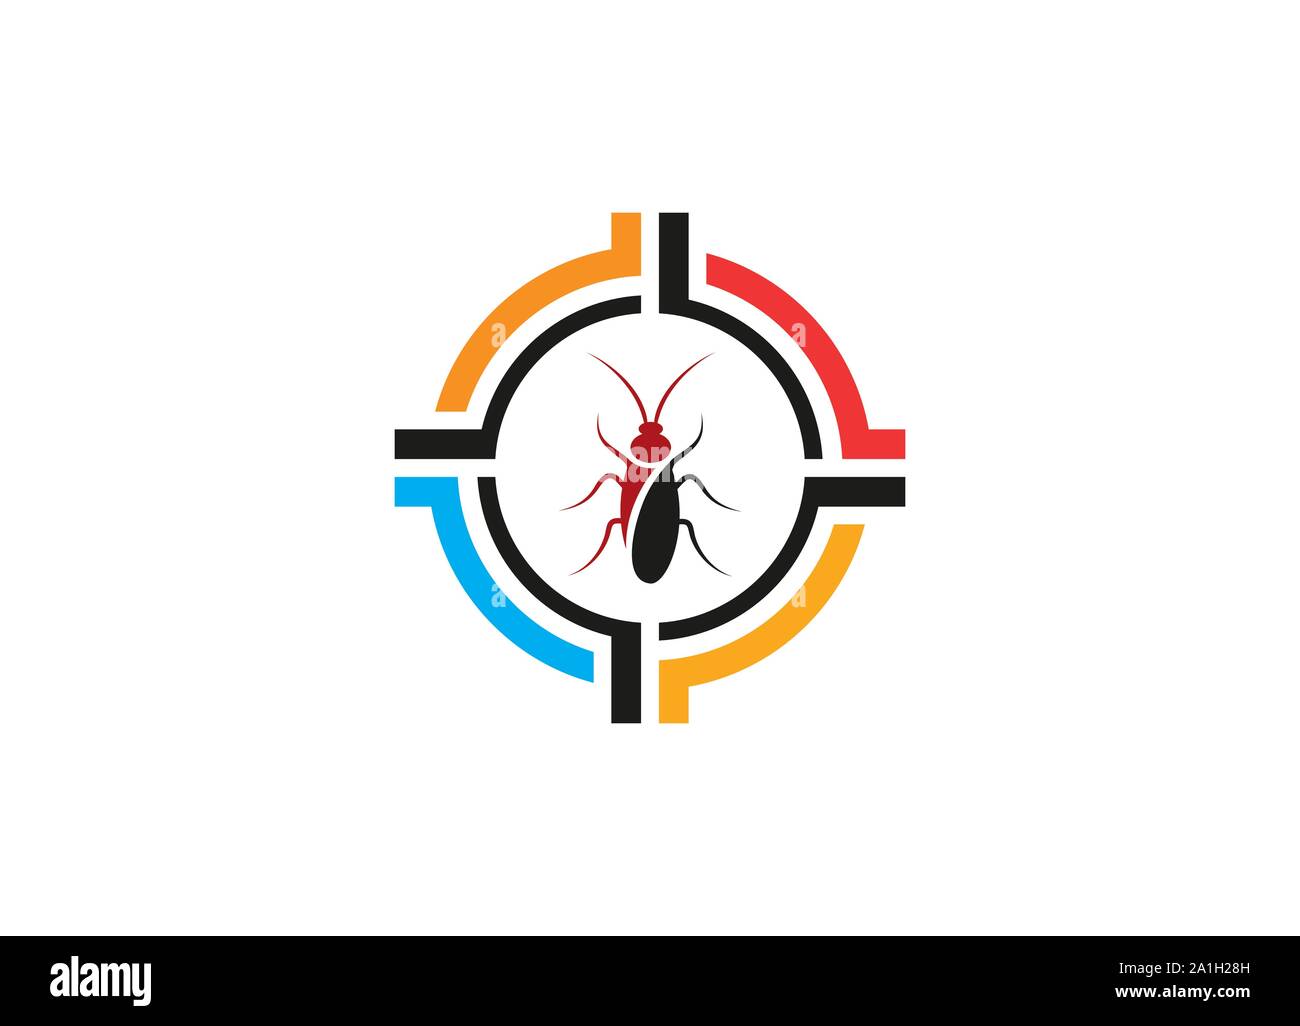 Logo simple pour destructeurs d'insectes Logo Design moderne, cafard dans l'icône cible dans un style plat isolé, destructeurs d'Insectes Les insectes, logo logo design, Illustration de Vecteur